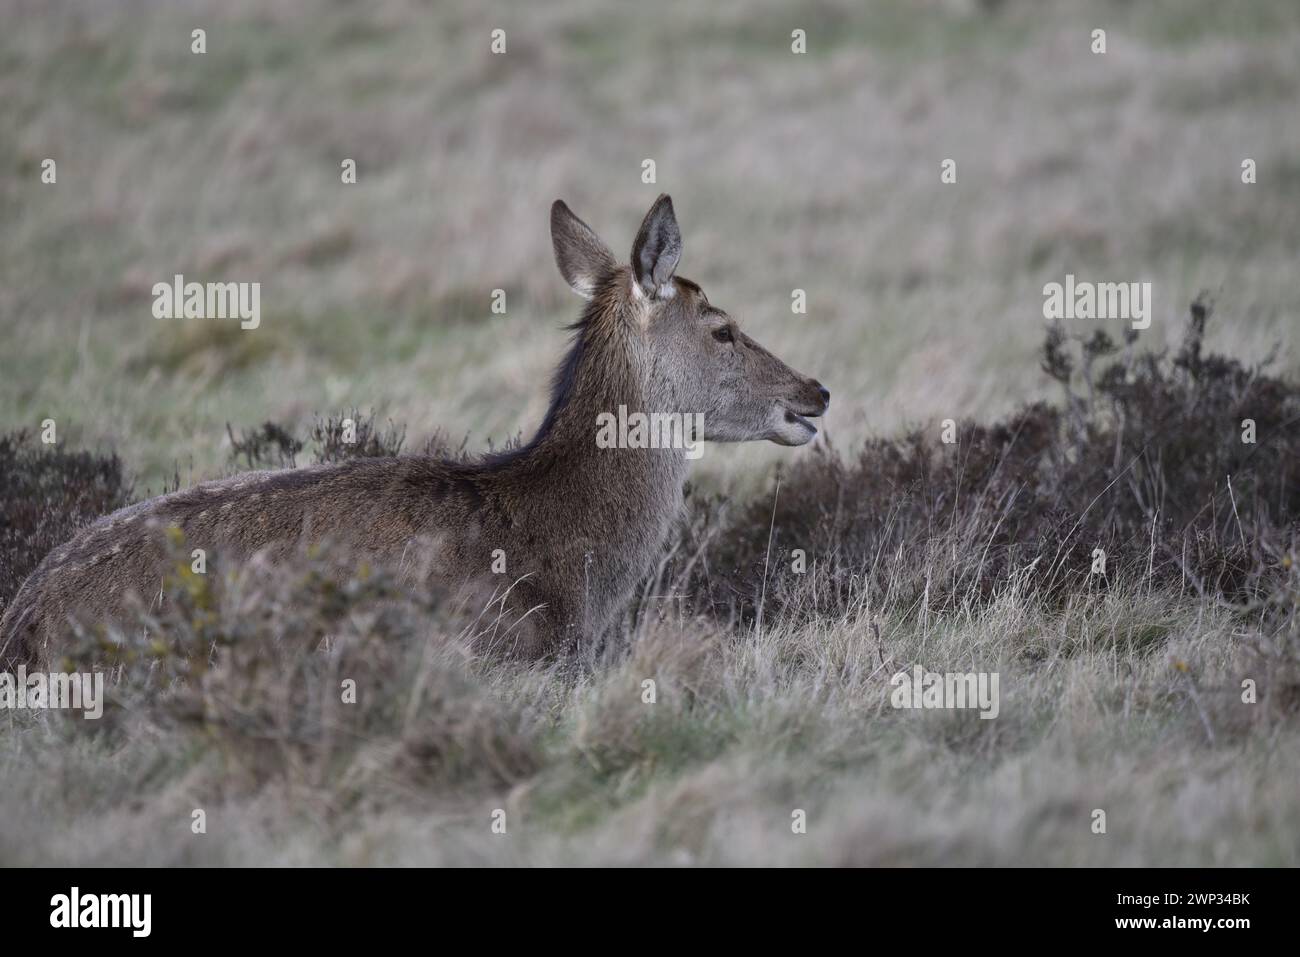 En bas à gauche au premier plan image d'un Doe Red Deer (Cervus elaphus) couché dans l'herbe dans le profil droit avec la bouche ouverte et les oreilles levées, prise au Royaume-Uni en hiver Banque D'Images